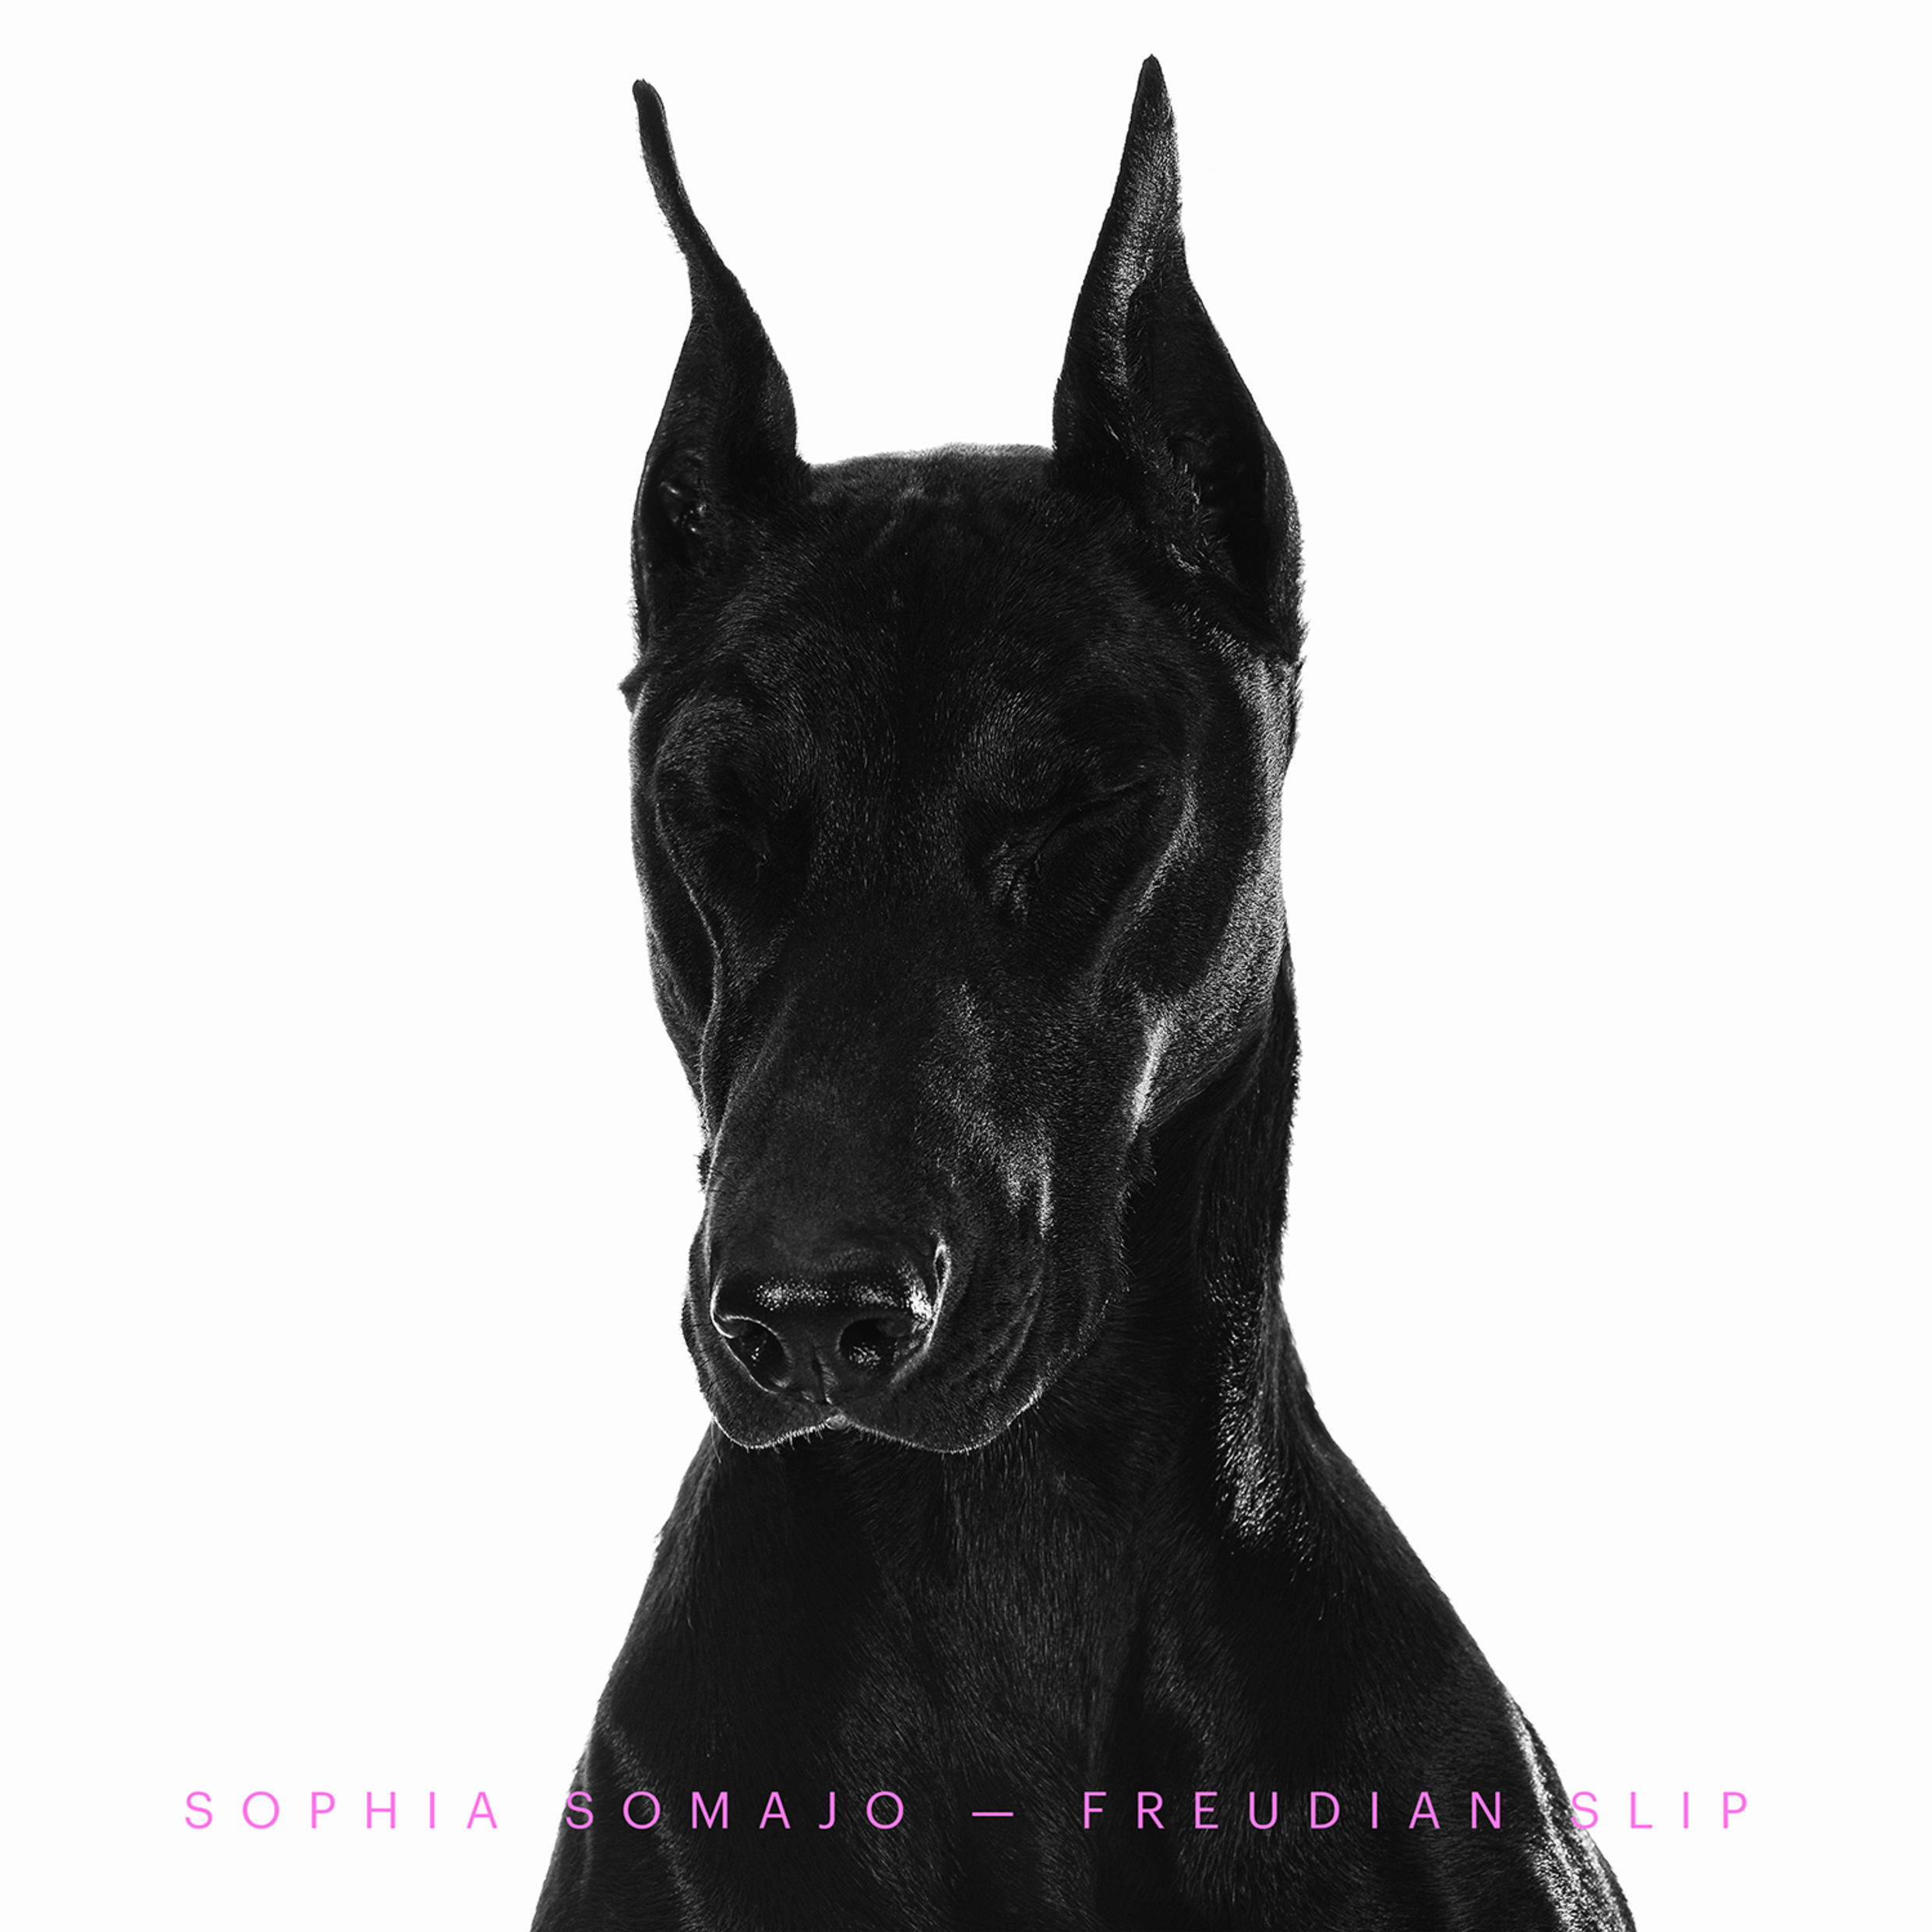 Sophia-Somajo-Freudian-Slip-2017-2480x2480